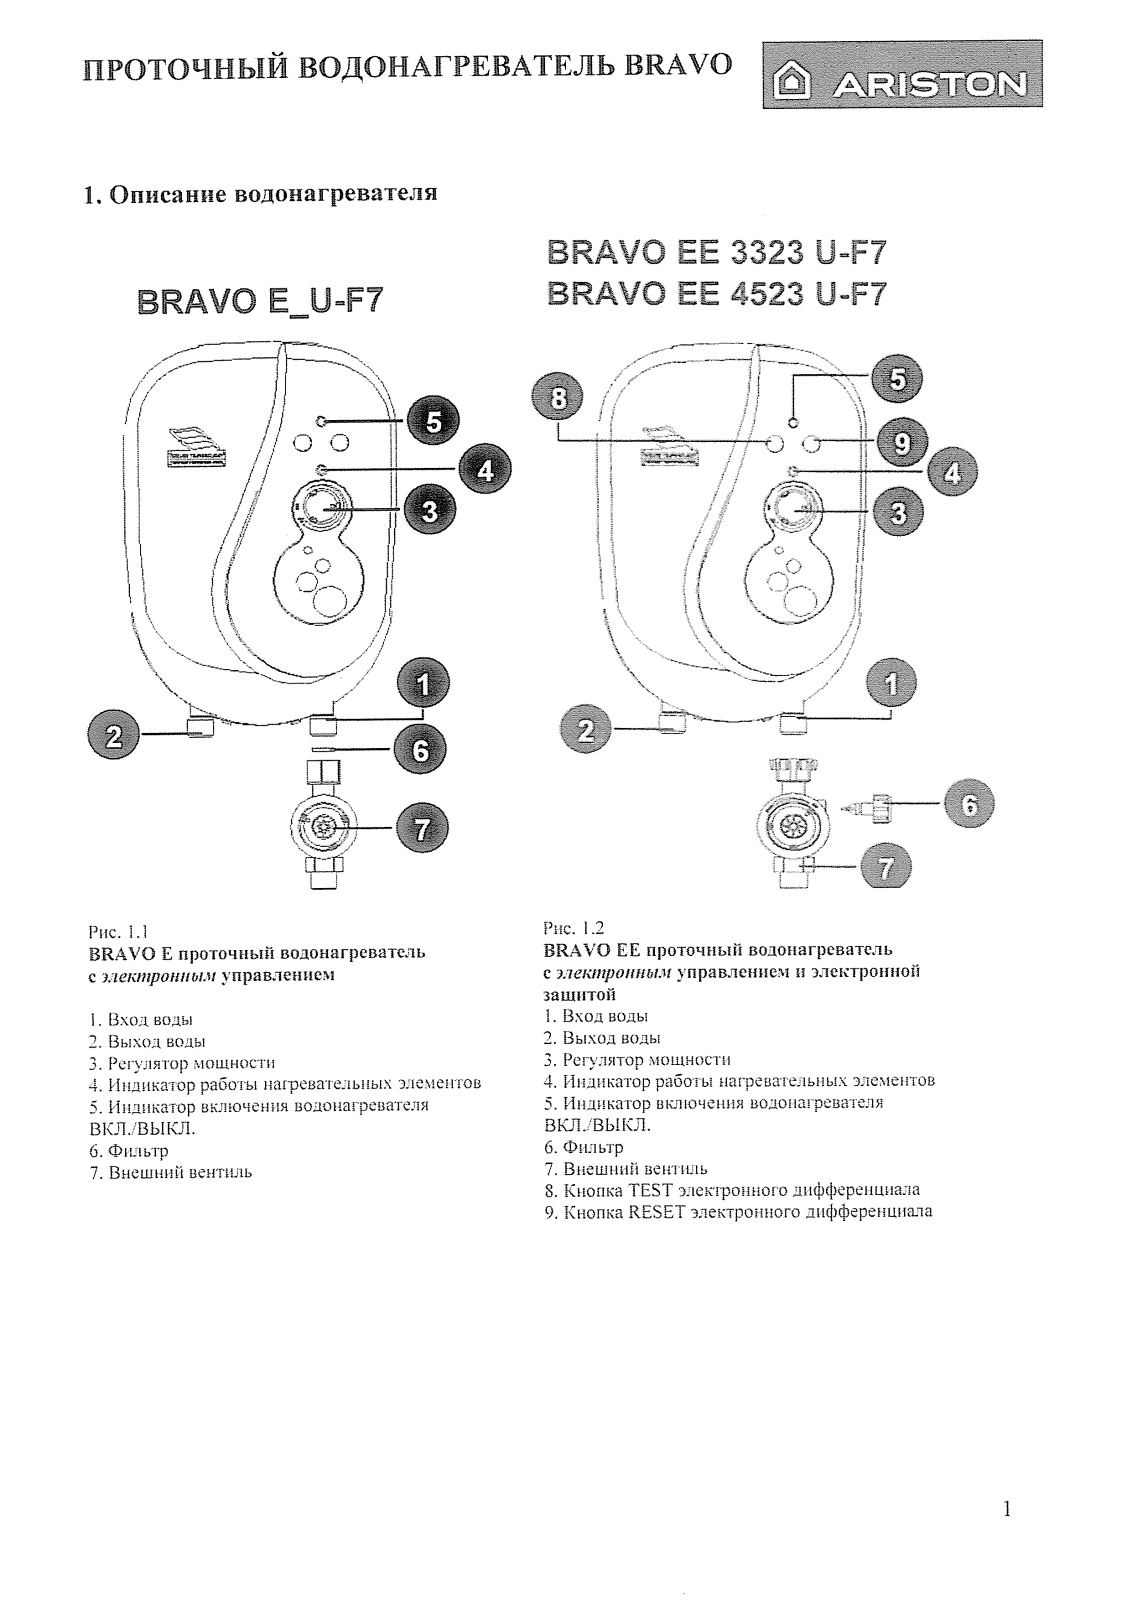 ARISTON BRAVO E-U-F7, BRAVO EE 4523 U-F7 User Manual